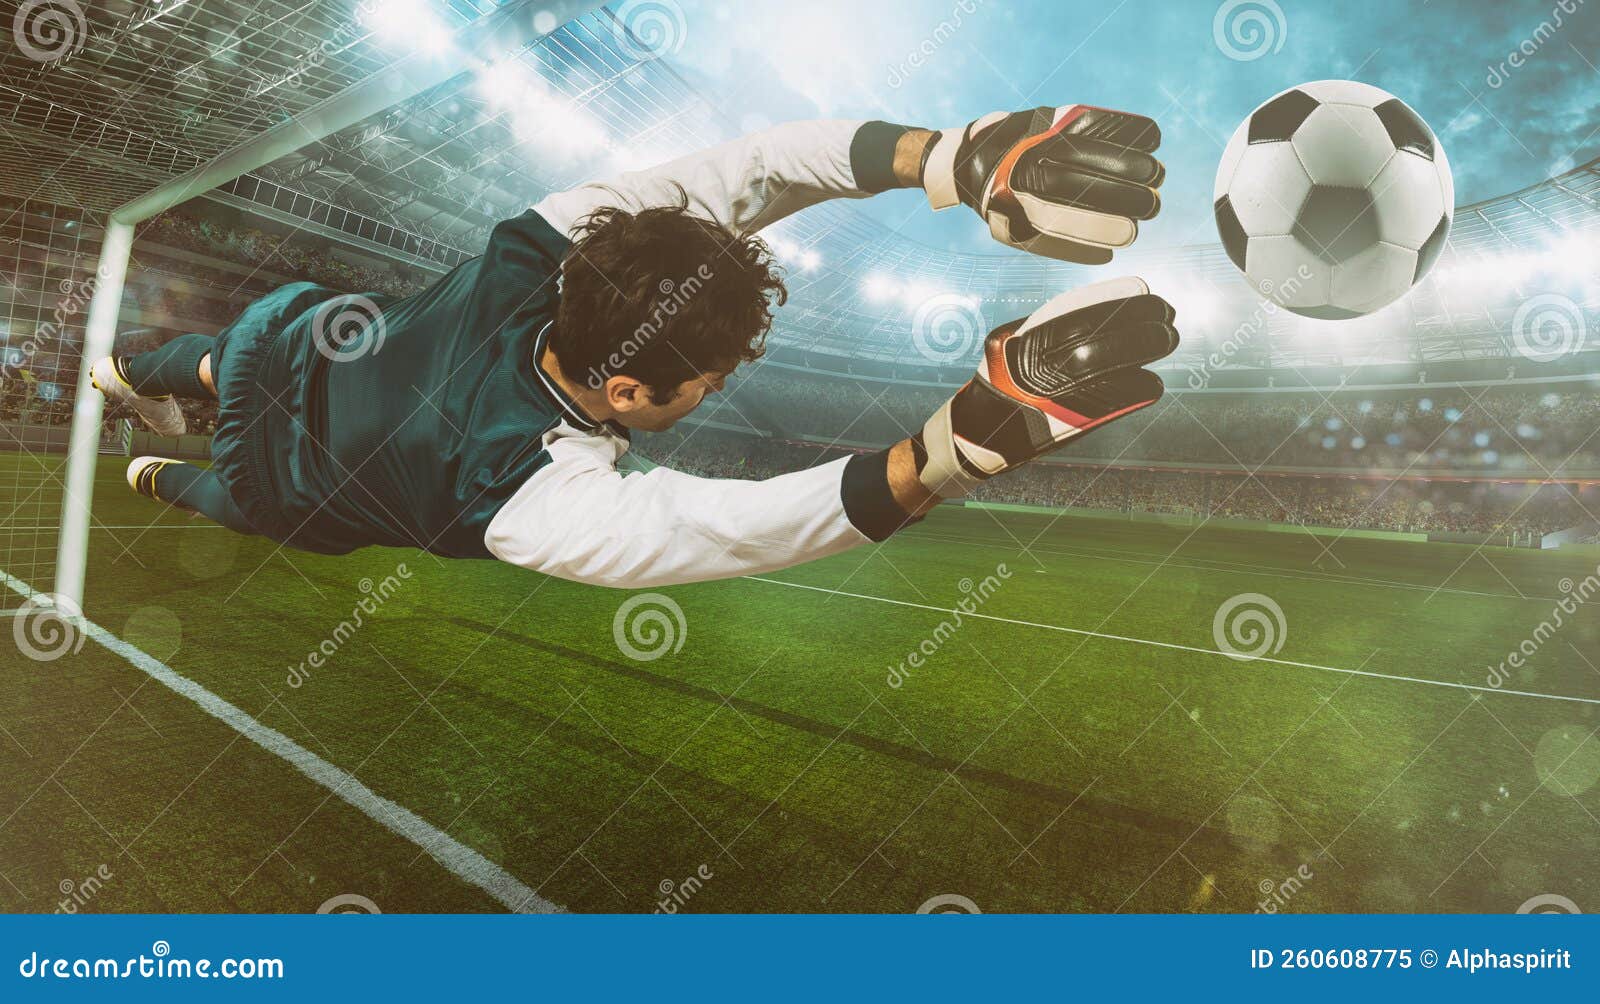 O goleiro chuta a bola no estádio durante um jogo de futebol